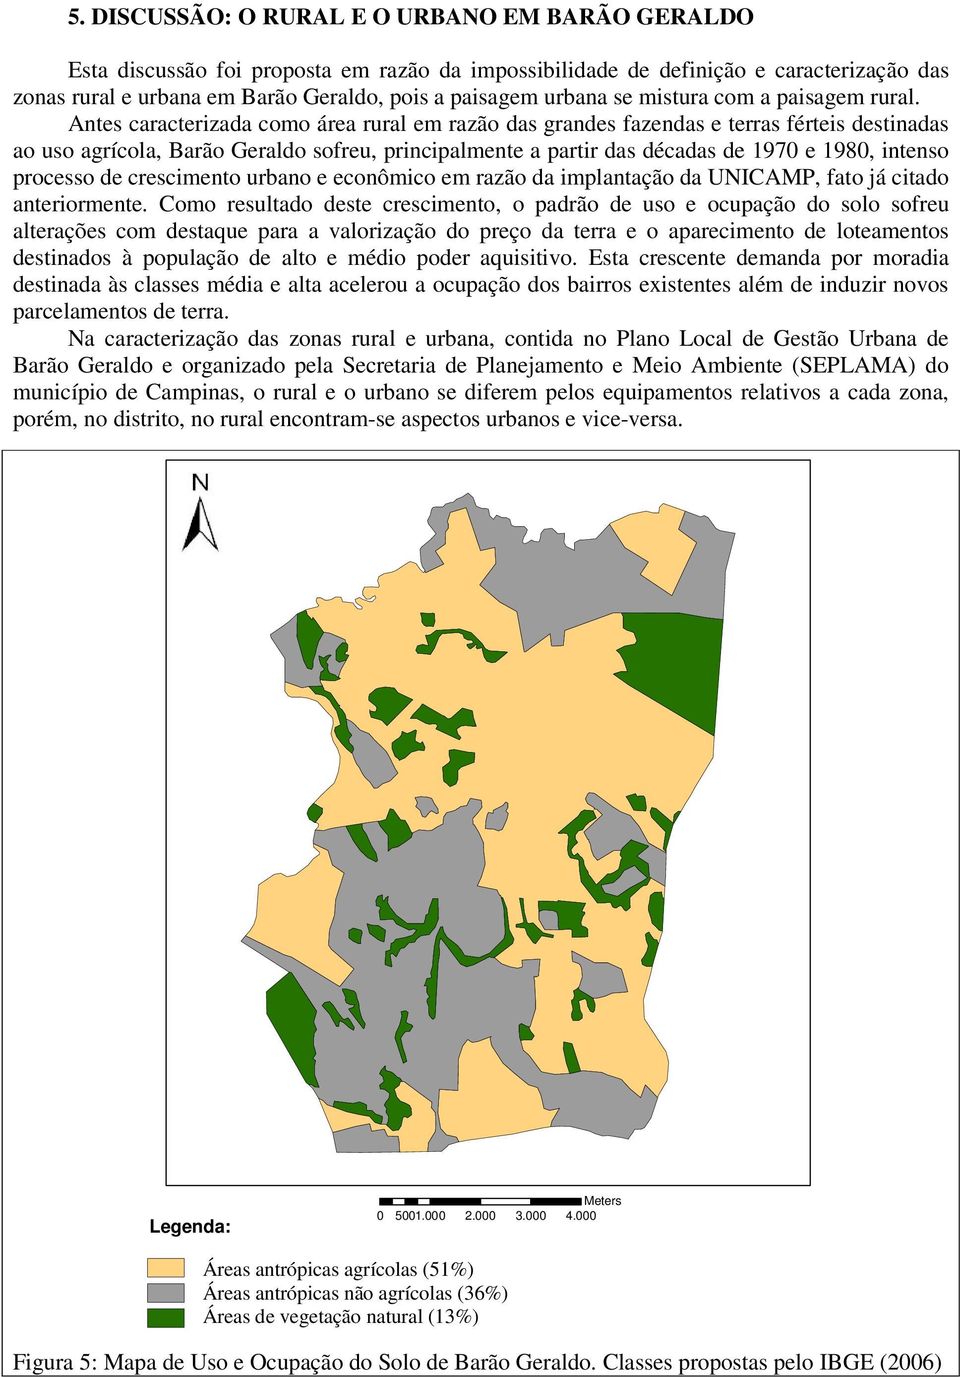 Antes caracterizada como área rural em razão das grandes fazendas e terras férteis destinadas ao uso agrícola, Barão Geraldo sofreu, principalmente a partir das décadas de 1970 e 1980, intenso